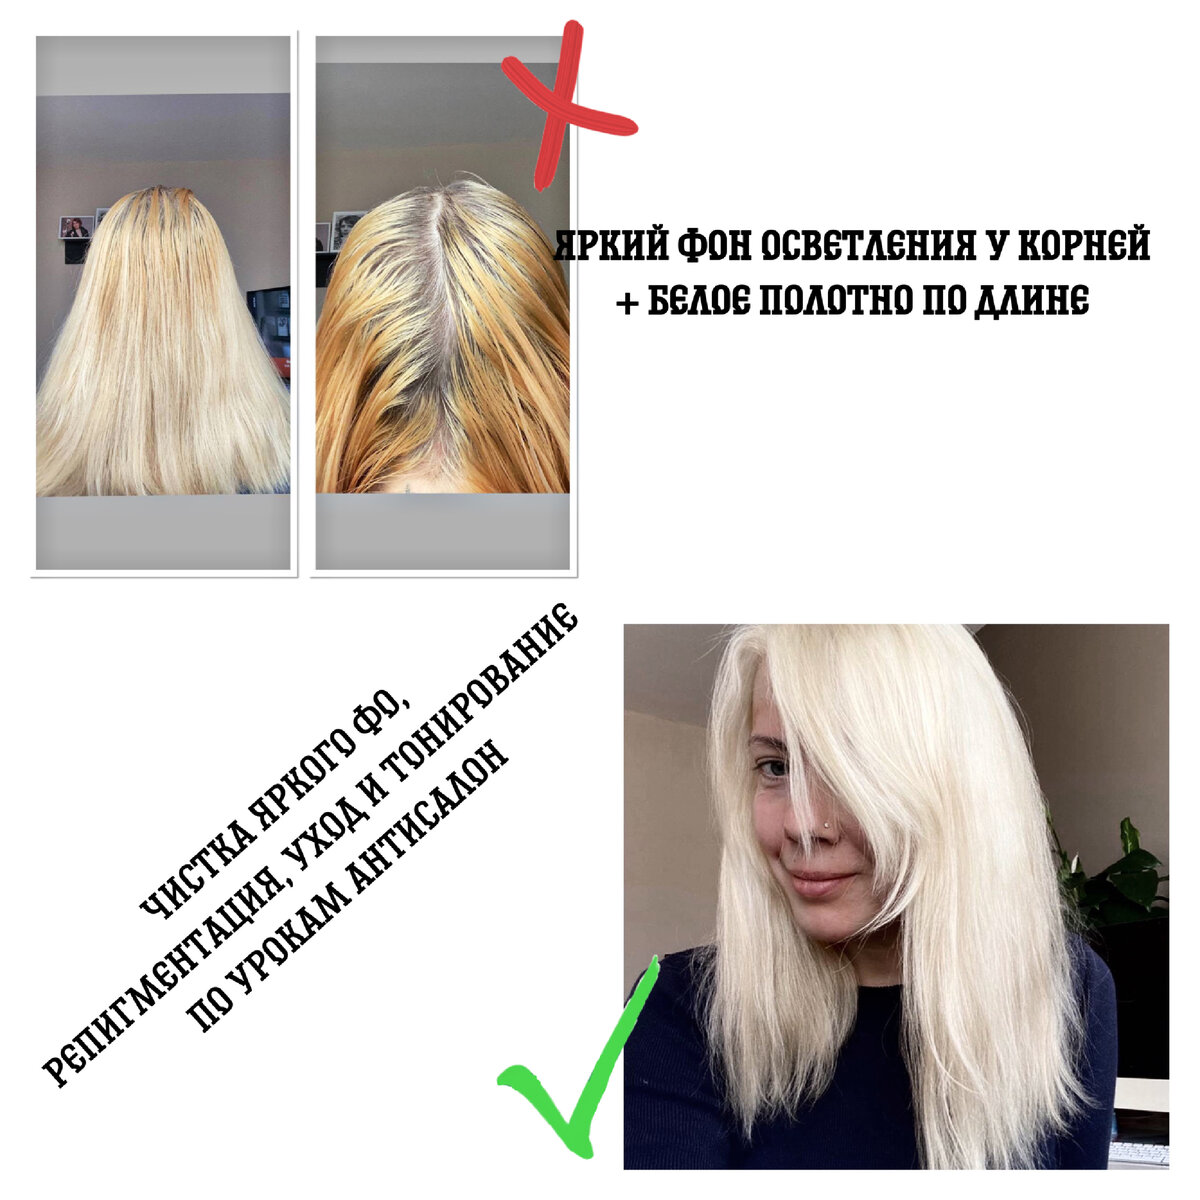 Как осветлить волосы дома самостоятельно: самые простые и эффективные способы - Блог WMarket